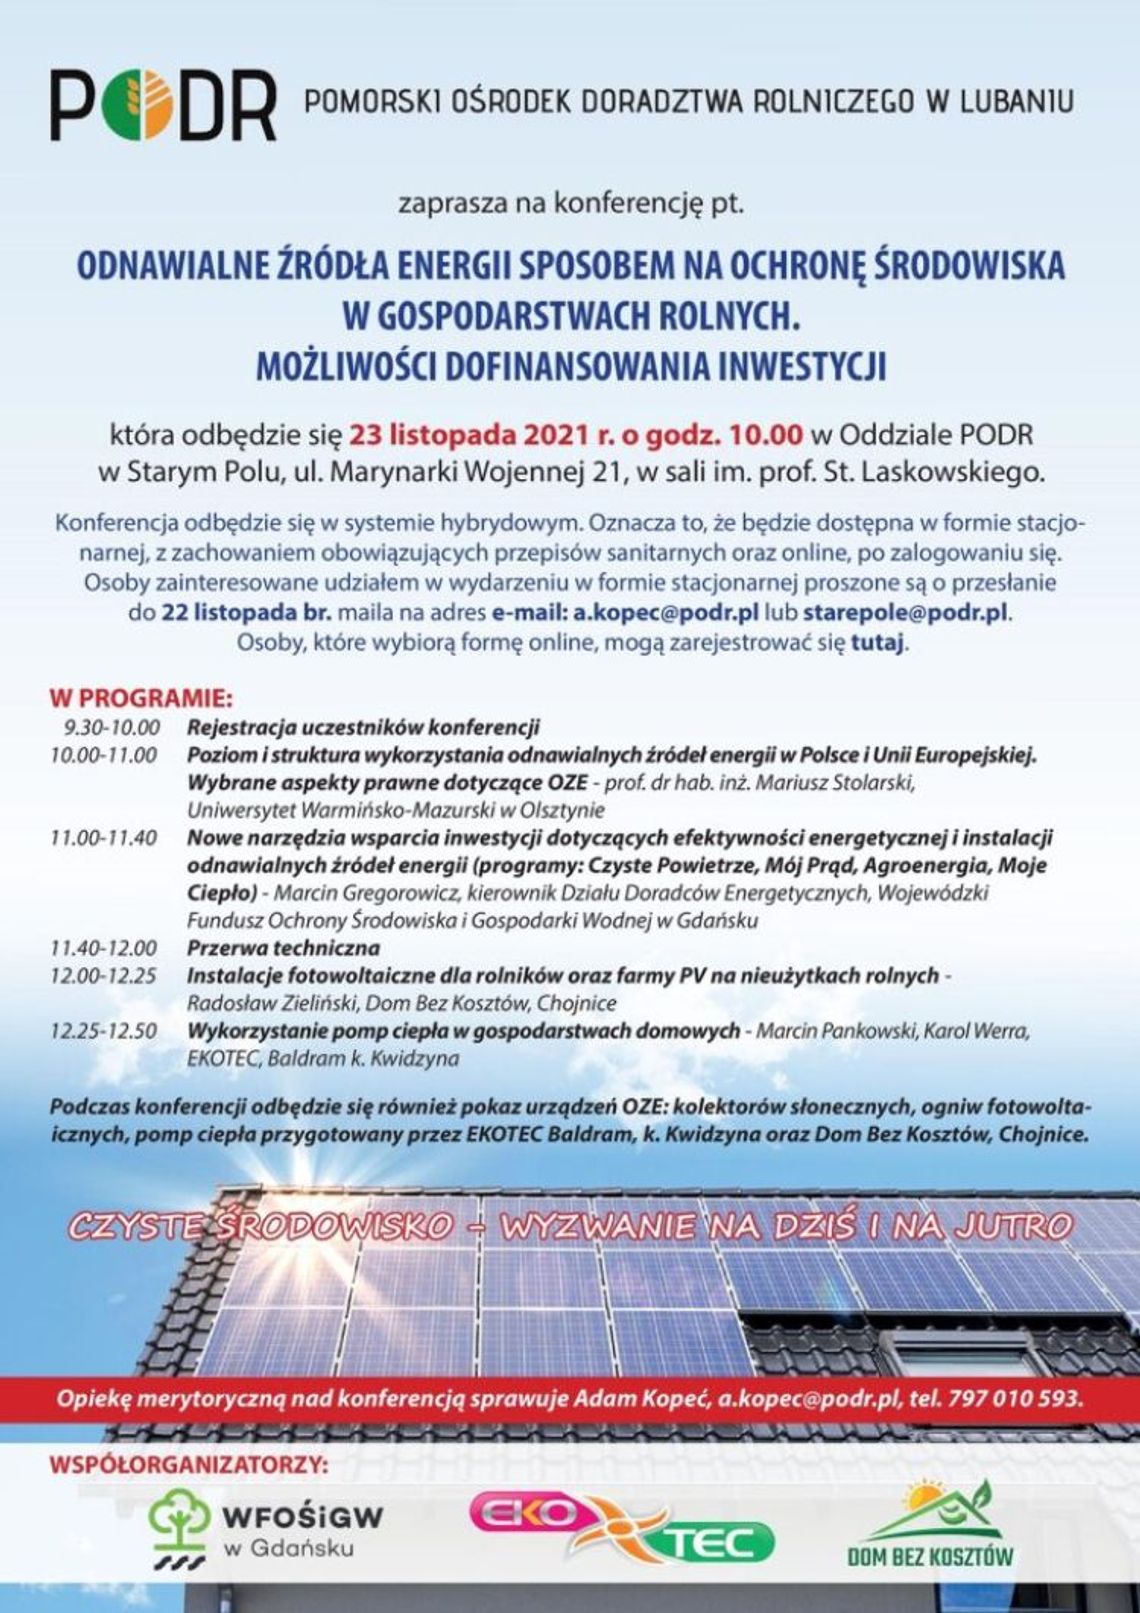 Odnawialne źródła energii - konferencja dla rolników